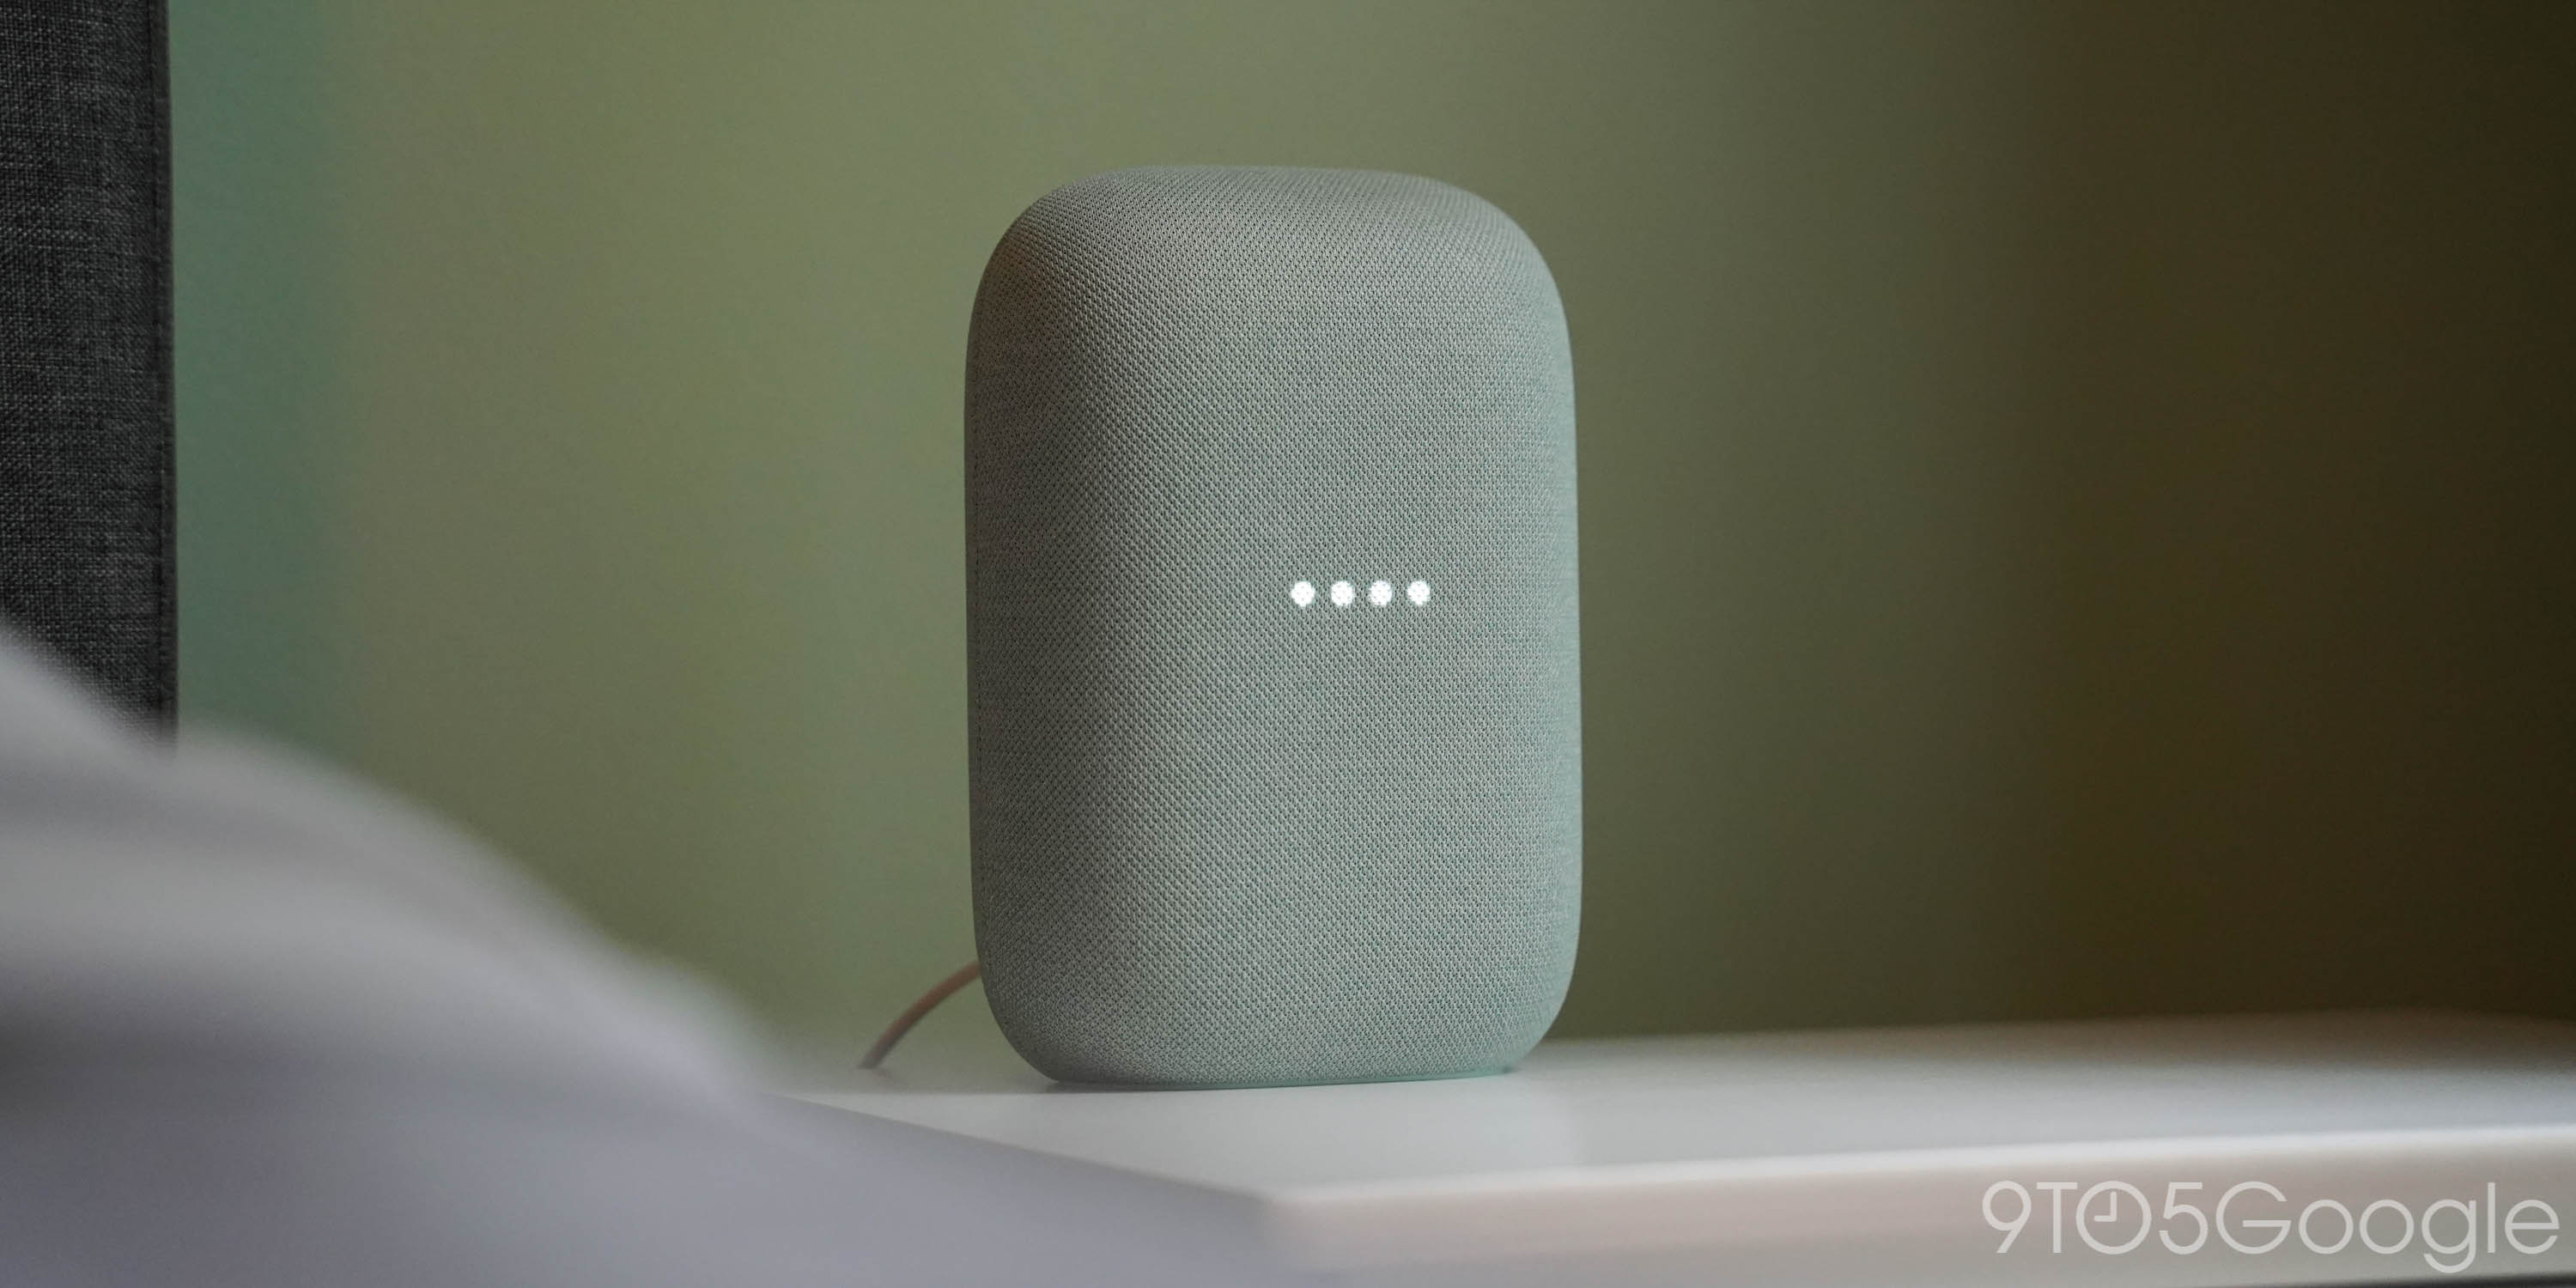 chromecast sound on google home